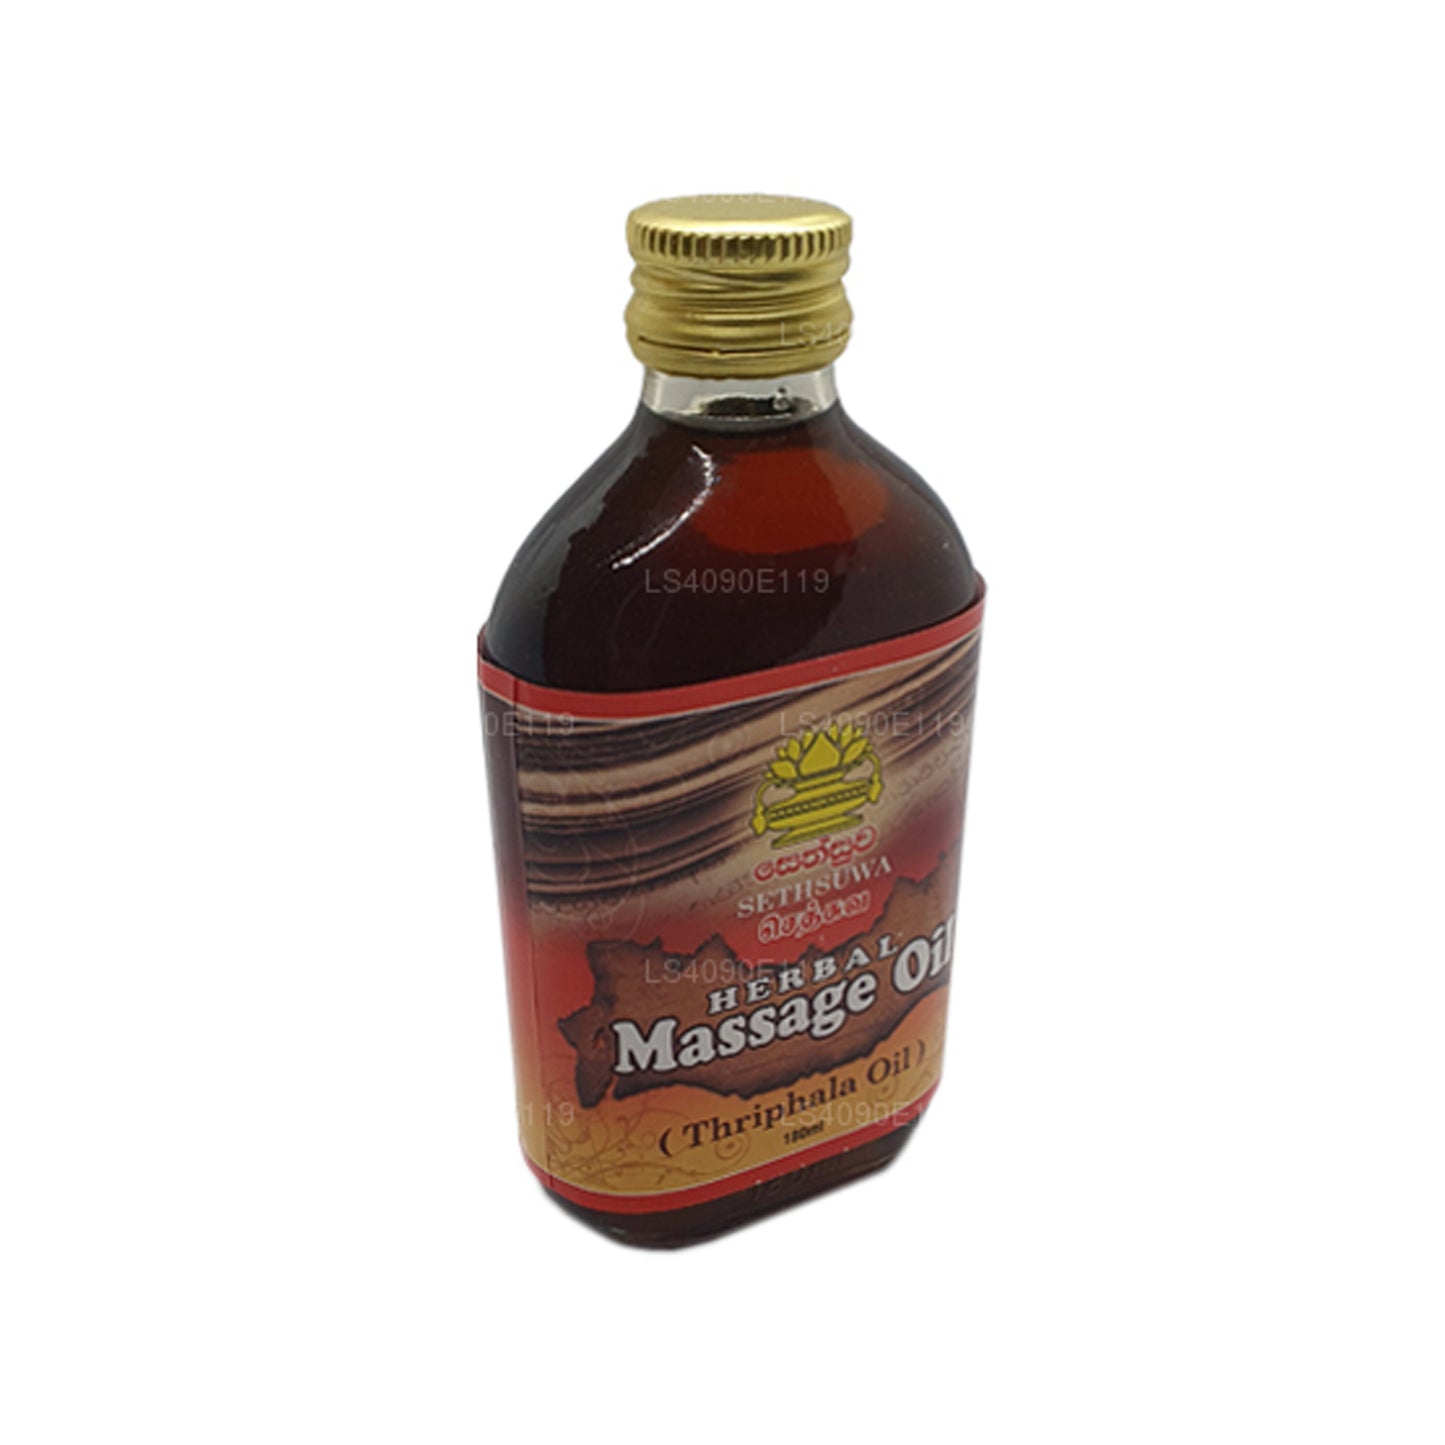 Aceite de masaje a base de hierbas Sethsuwa (60 ml)